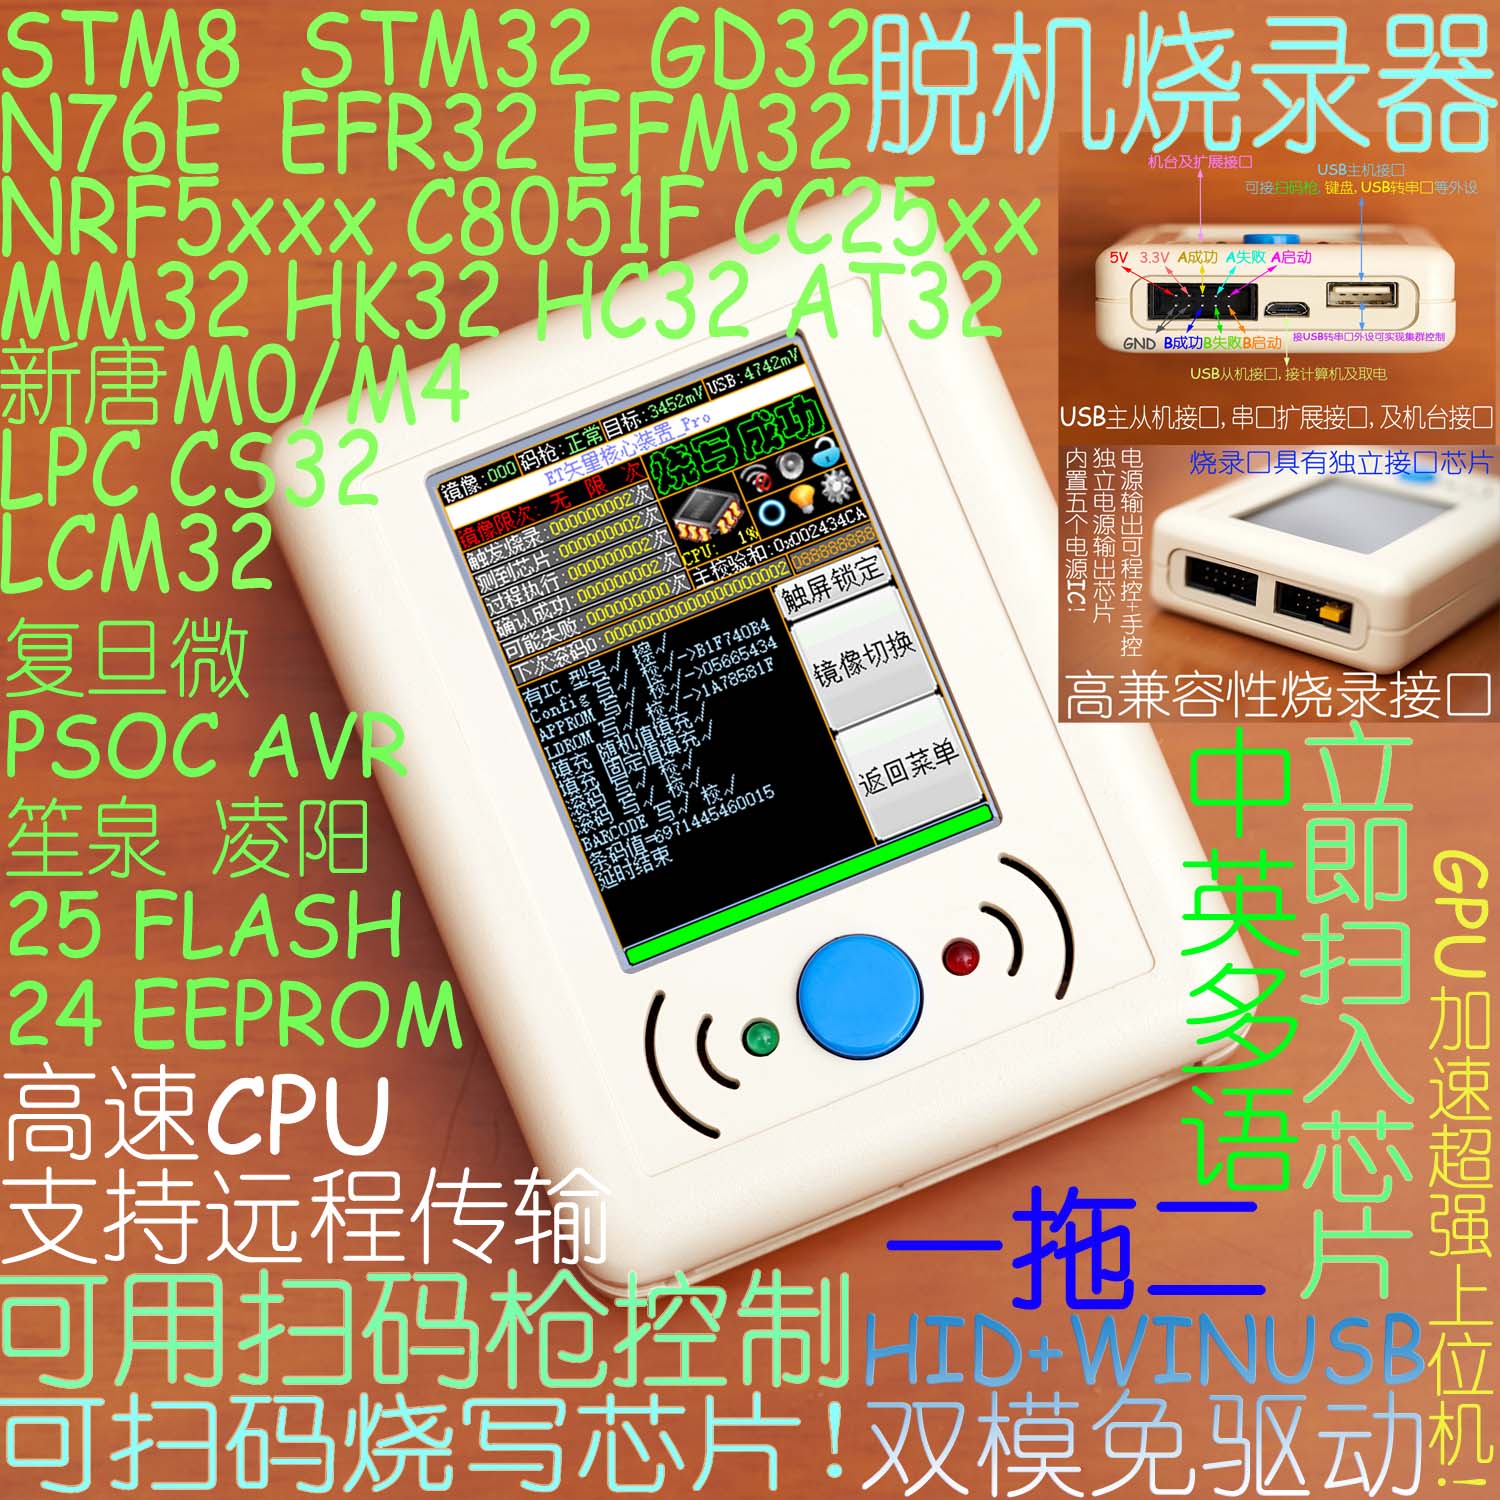 普冉 1拖2 PY32 PY32F030 F003 扫描控制 脱机烧录烧写编程下载器